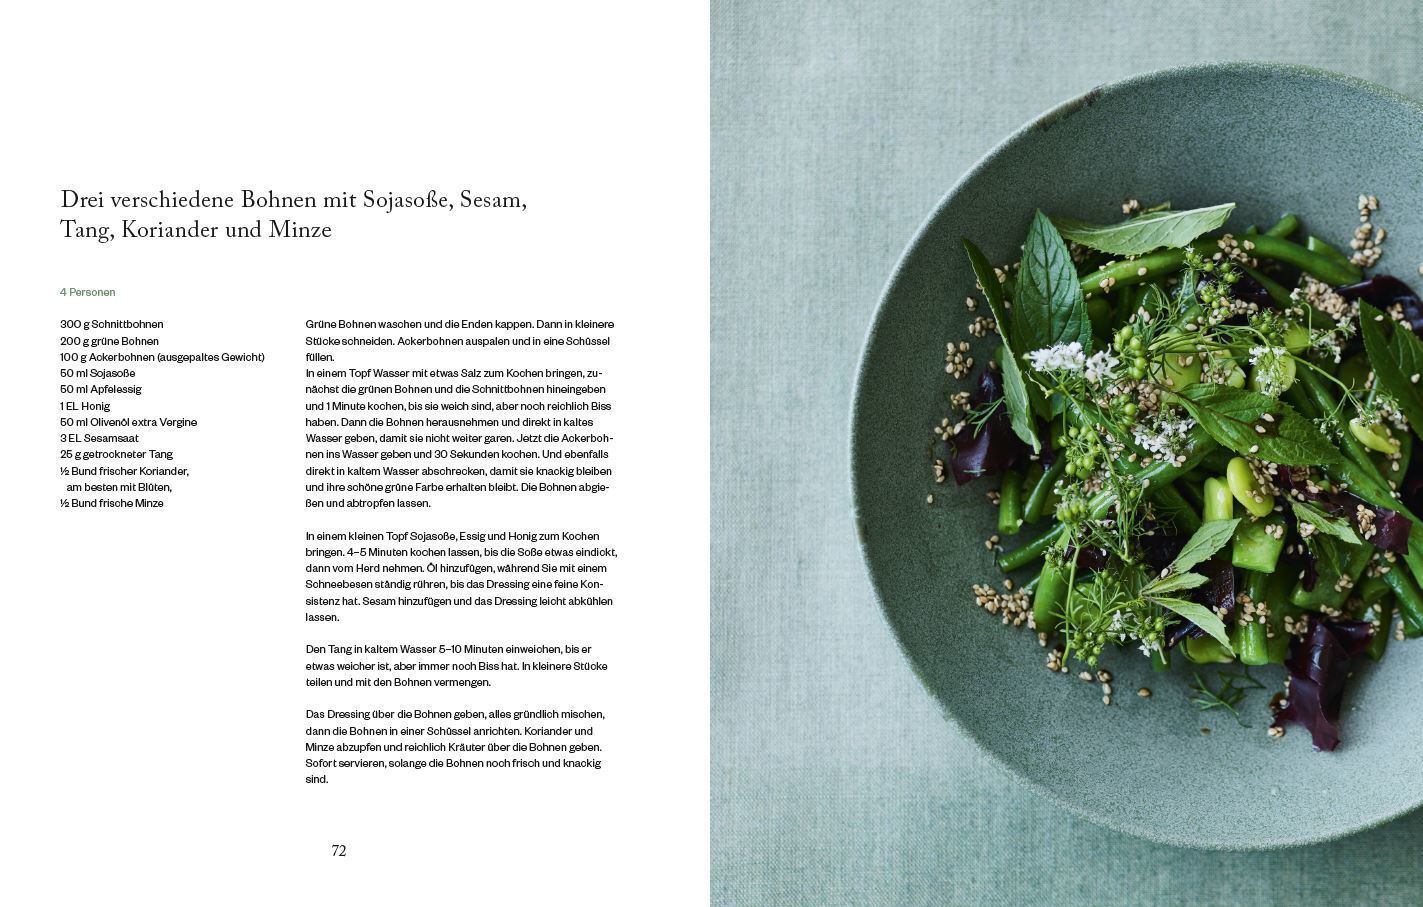 Immergrün: Die nordische Gemüseküche - Kochbuch